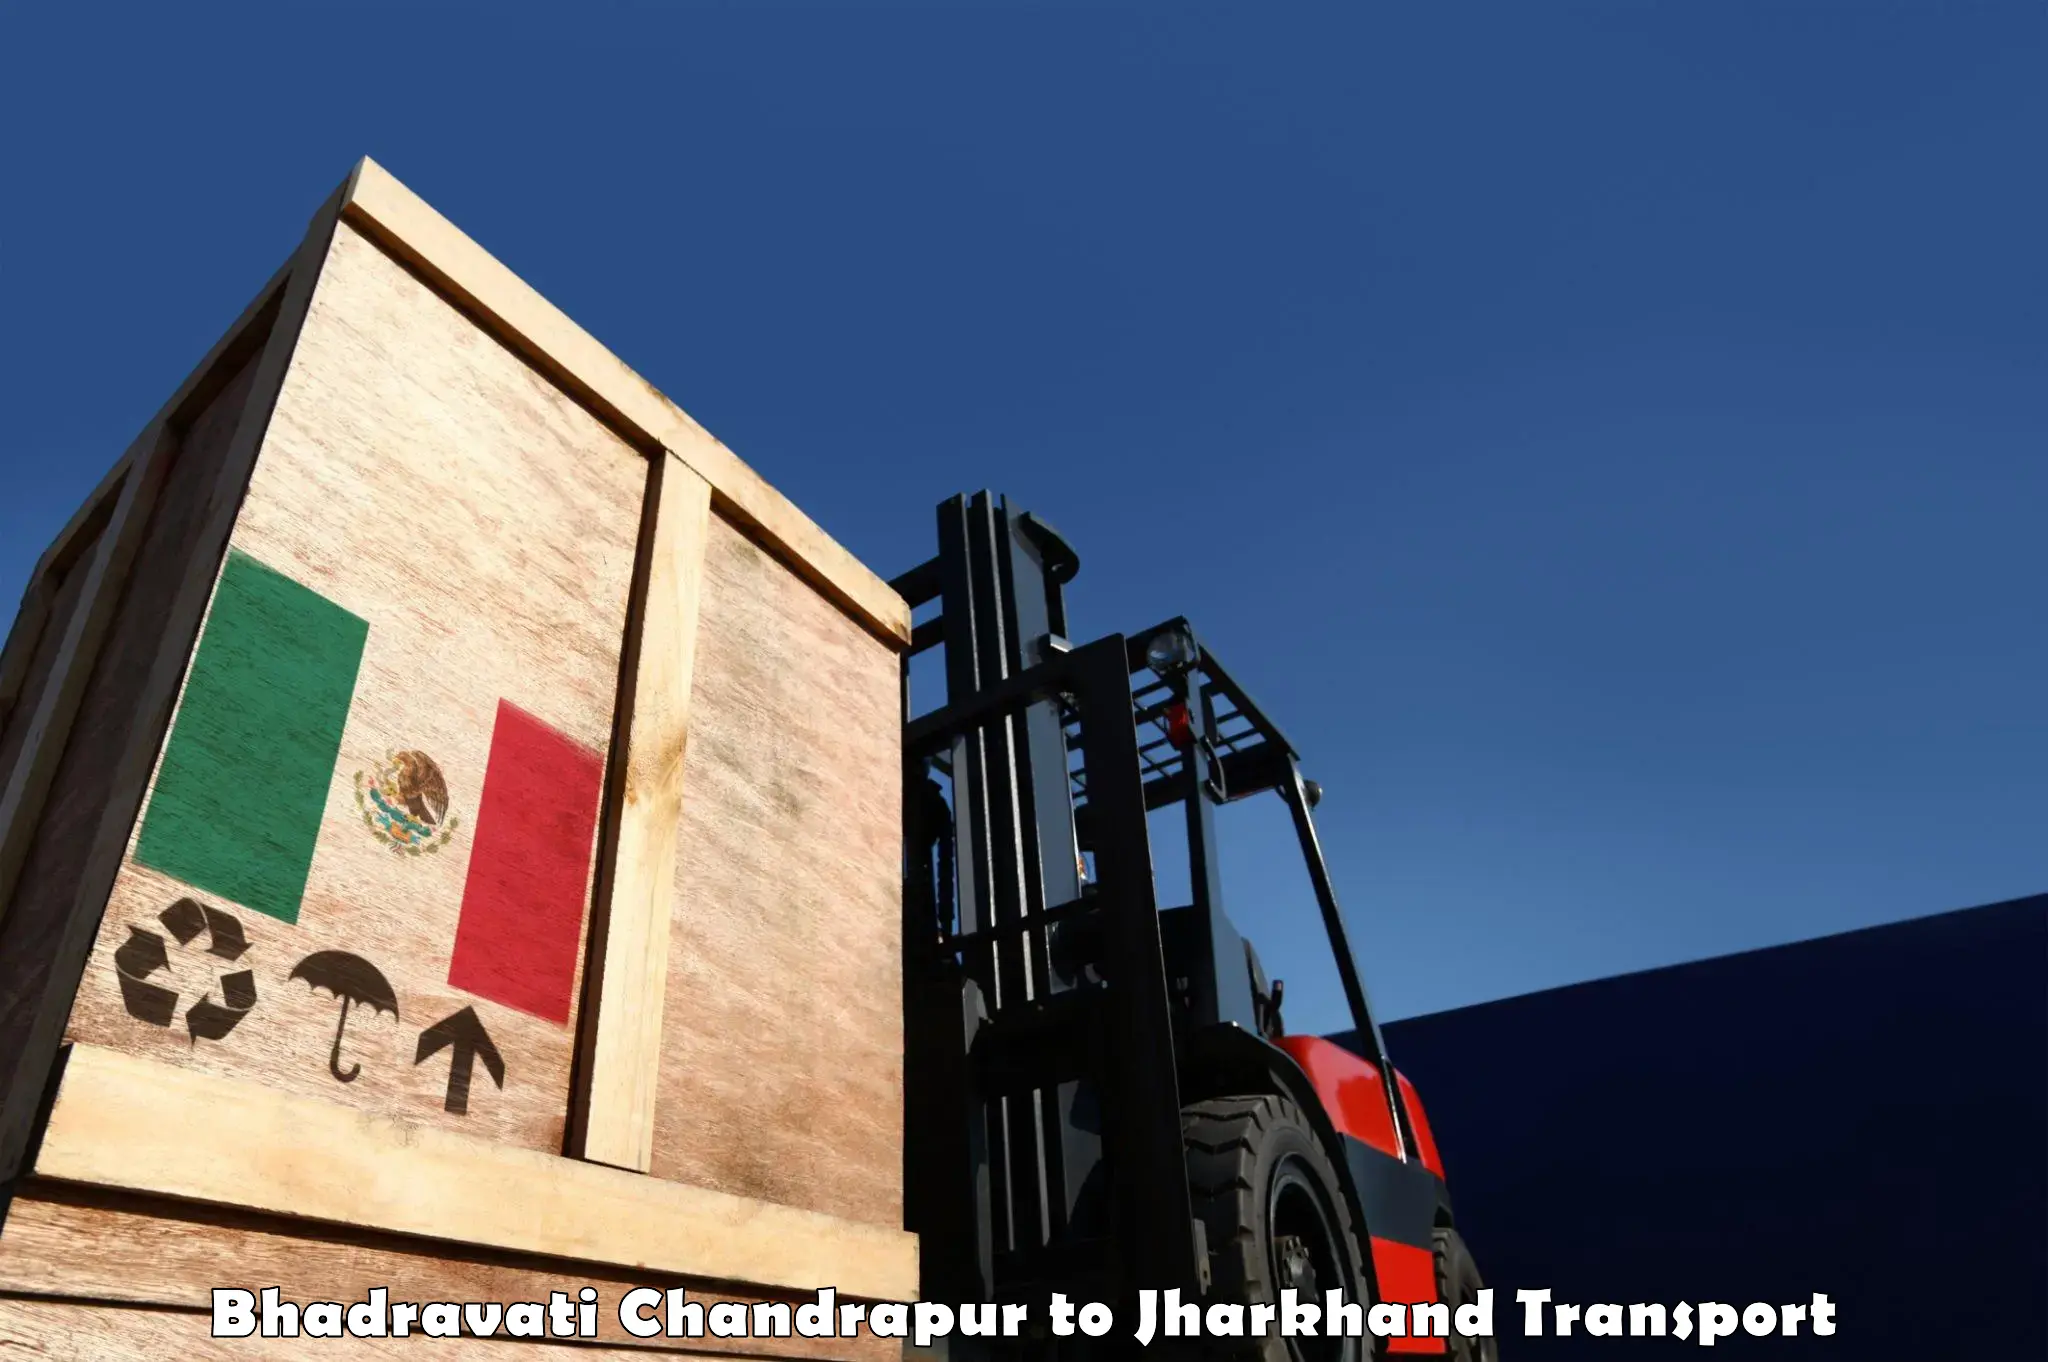 Truck transport companies in India Bhadravati Chandrapur to Manoharpur